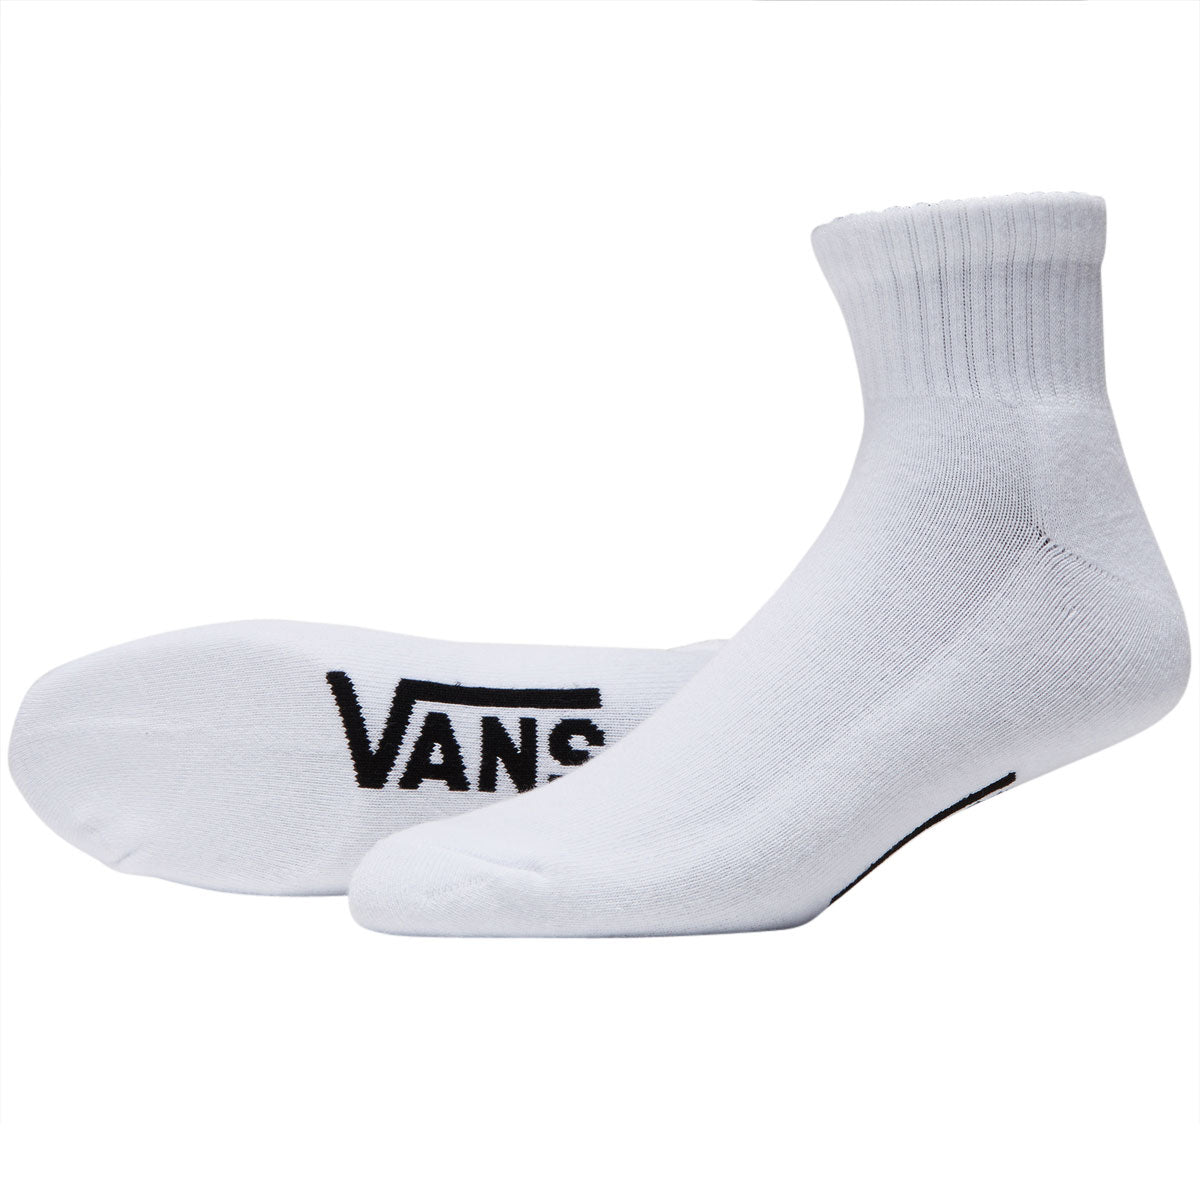 Vans Classic Ankle Socks - White image 2